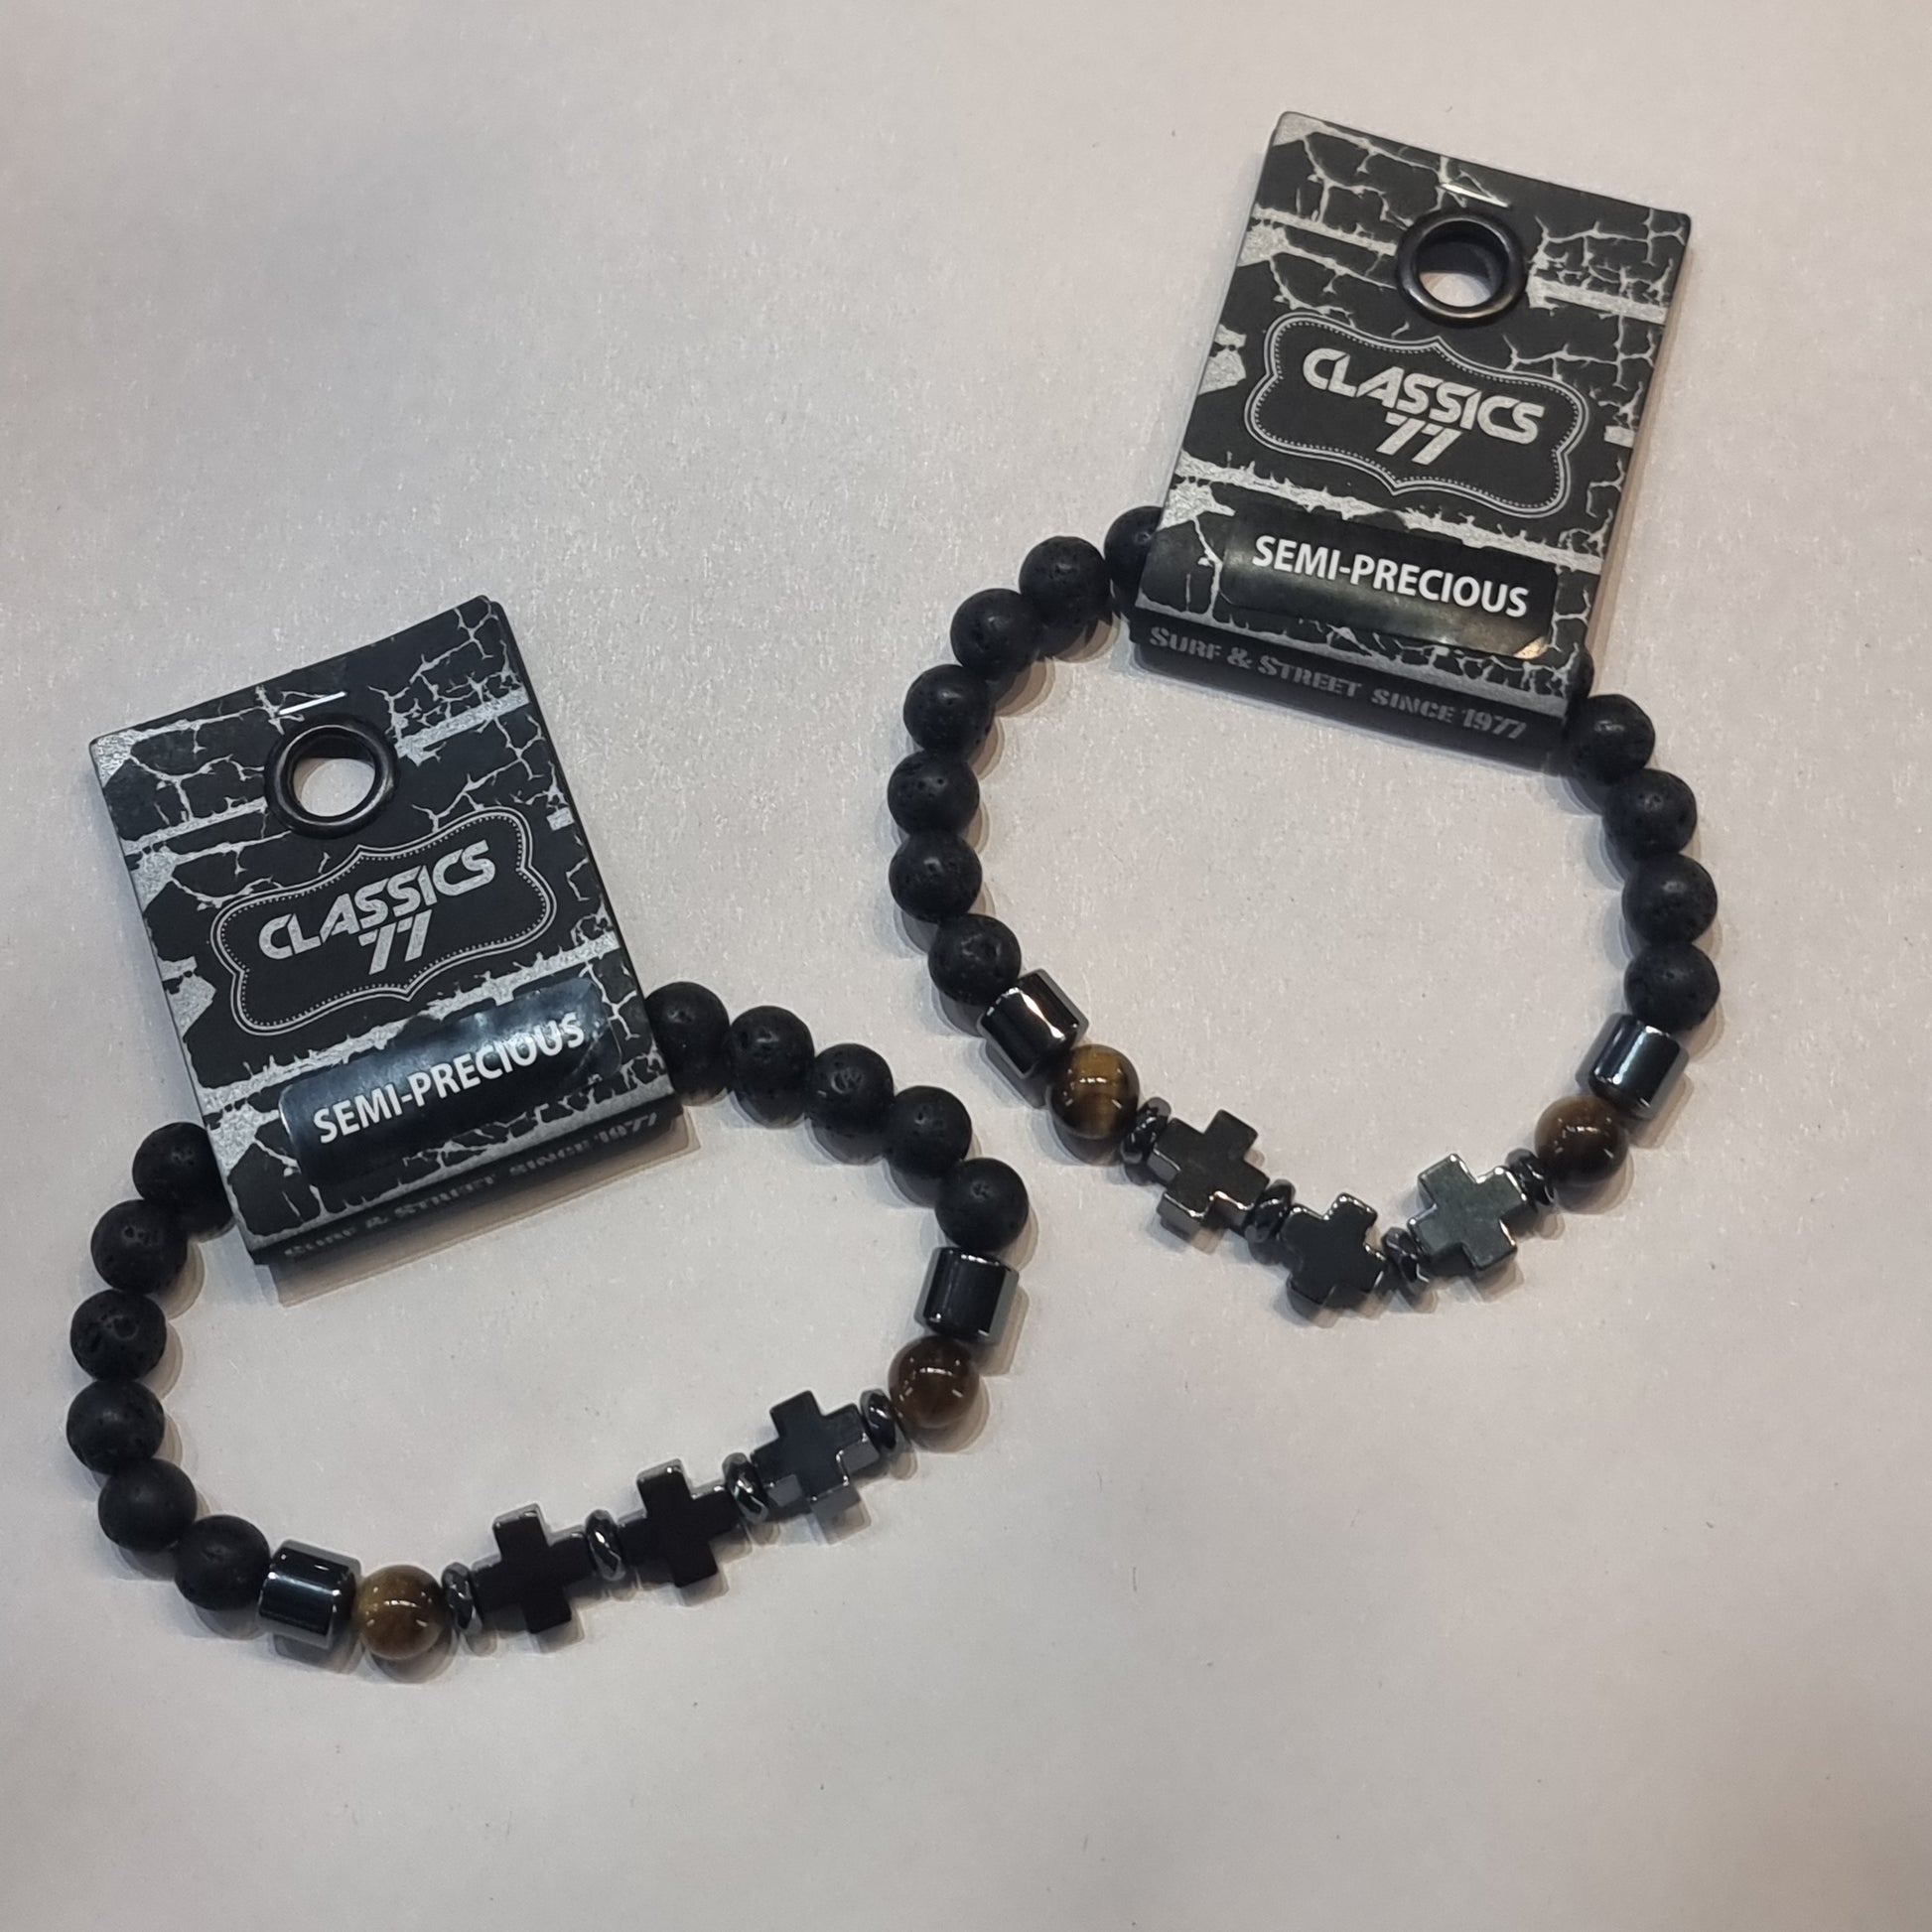 Cross lava beads bracelet - Rivendell Shop